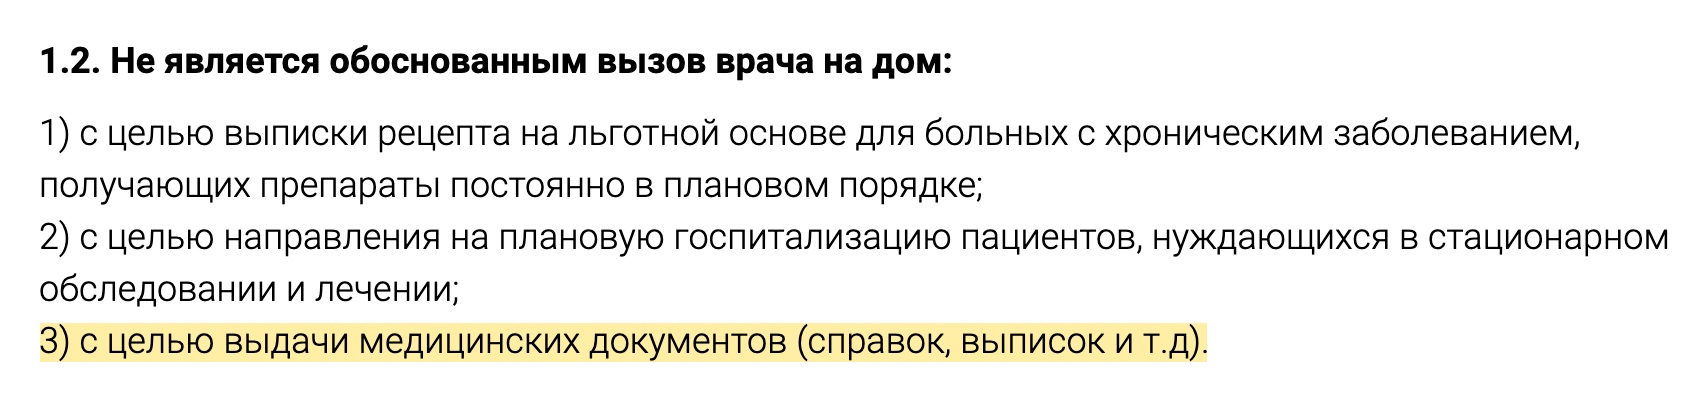 Одна из московских больниц на своем сайте черным по белому прописала, что выдача справки — необоснованный повод для вызова врача на дом. Источник: ramcrb.ru